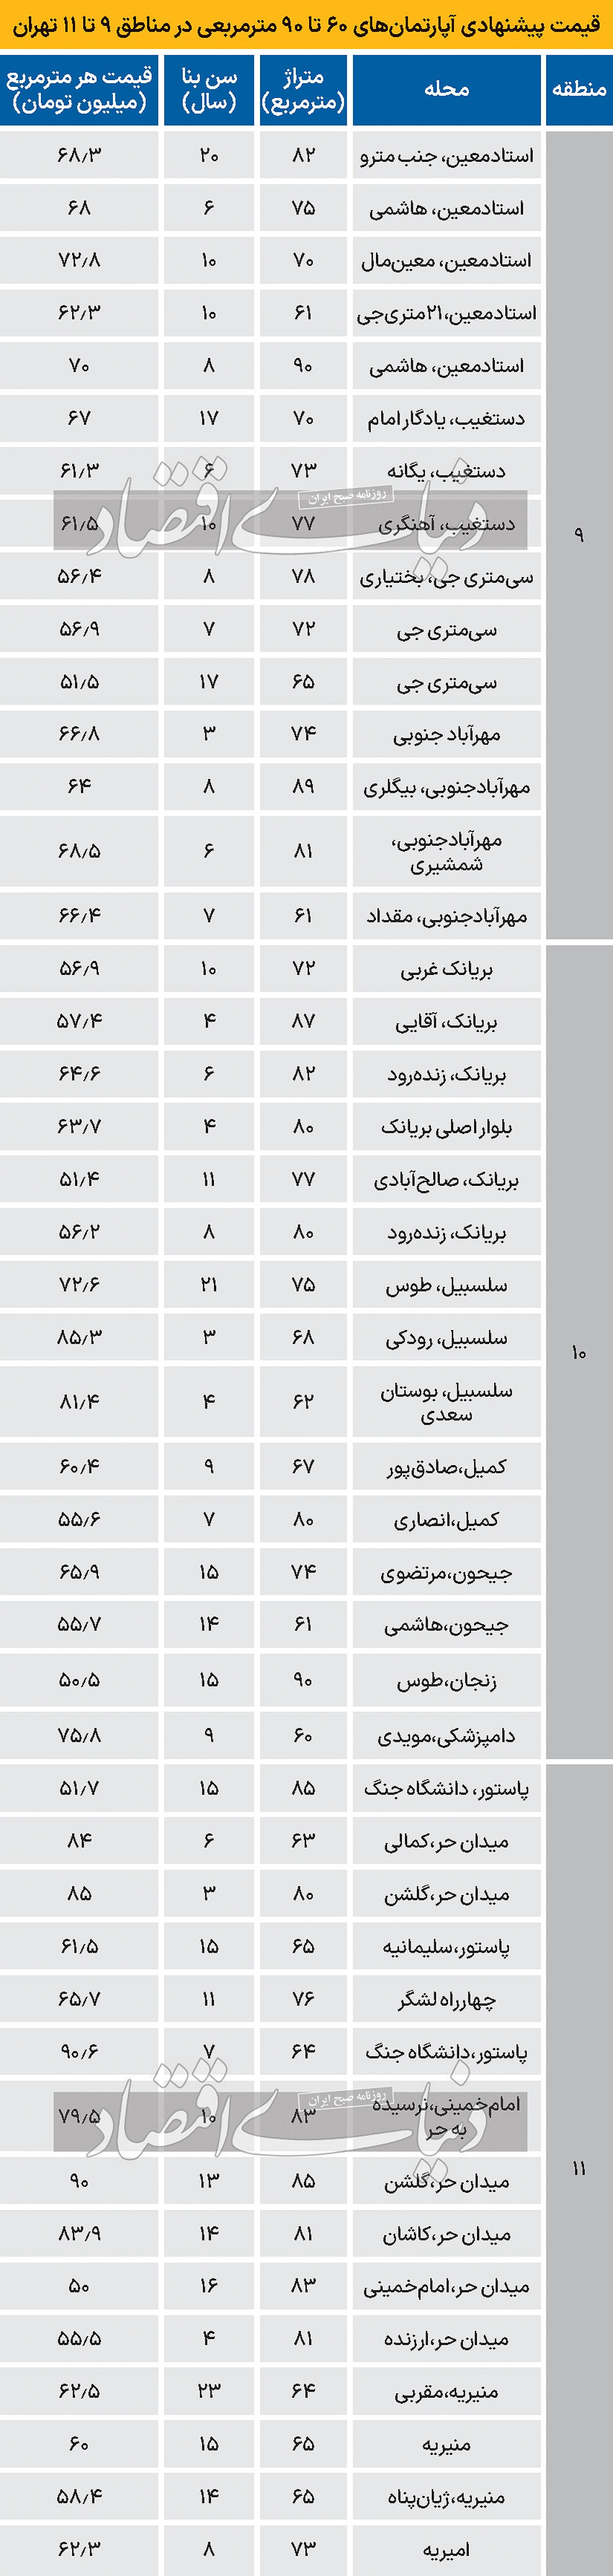 قیمت پیشنهادی آپارتمان در مناطق ۹ تا ۱۱ تهران/ جدول